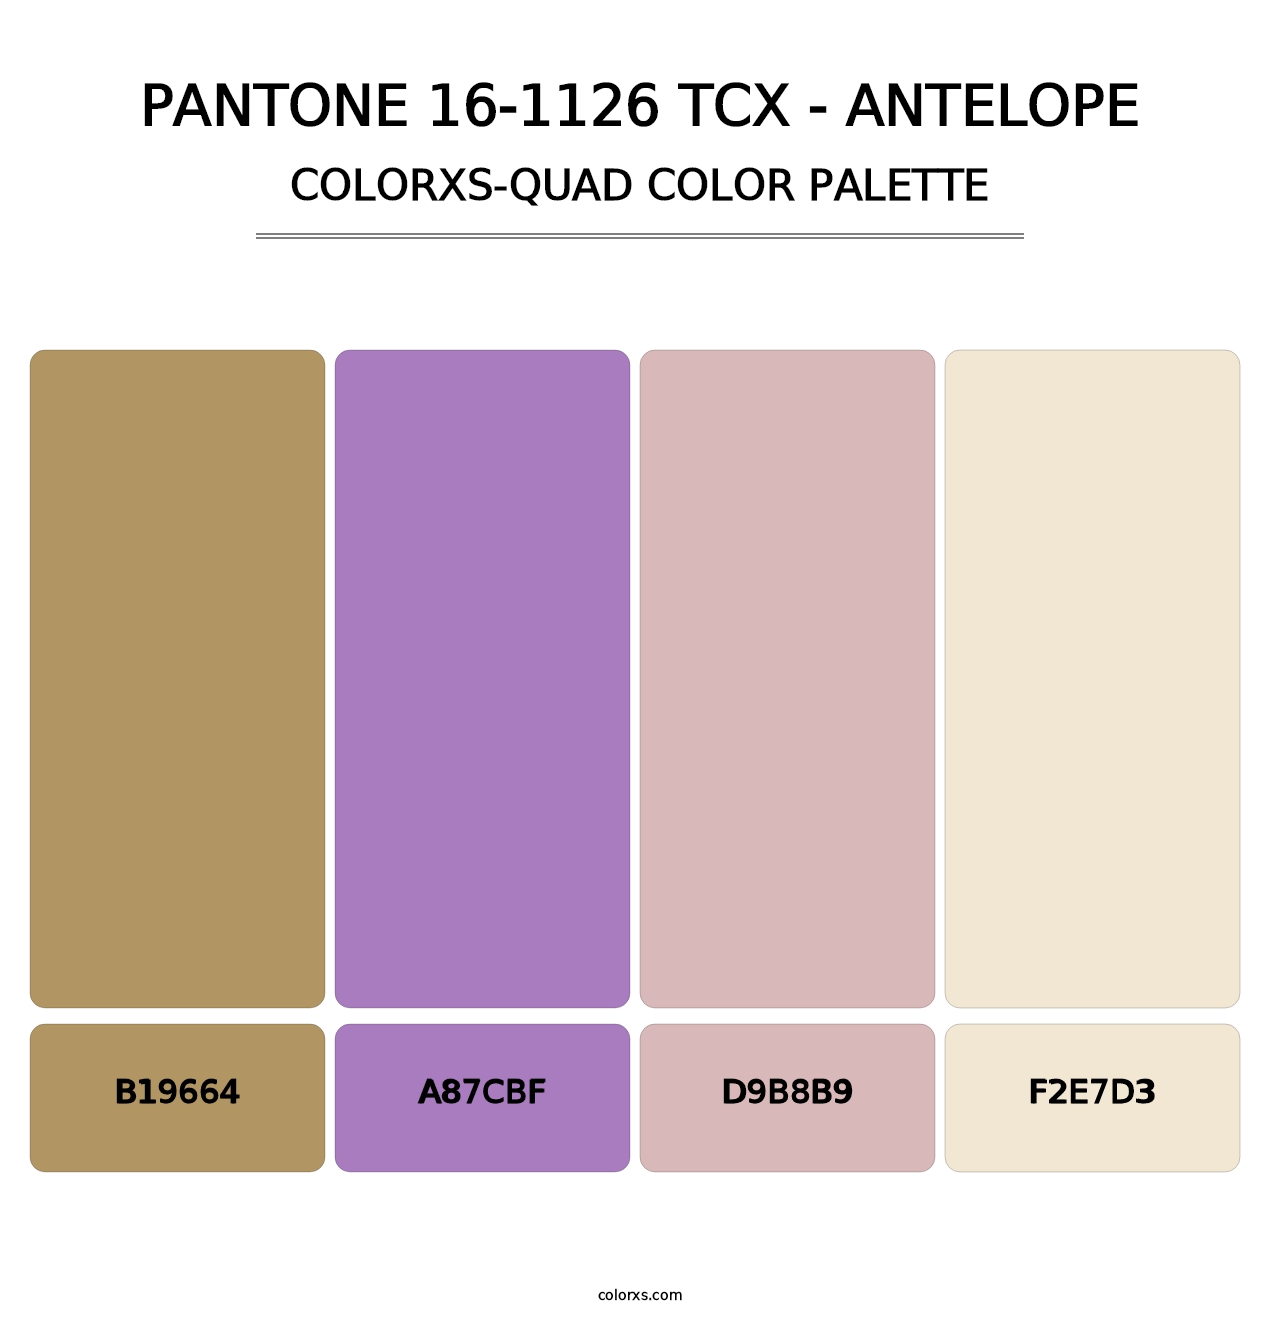 PANTONE 16-1126 TCX - Antelope - Colorxs Quad Palette